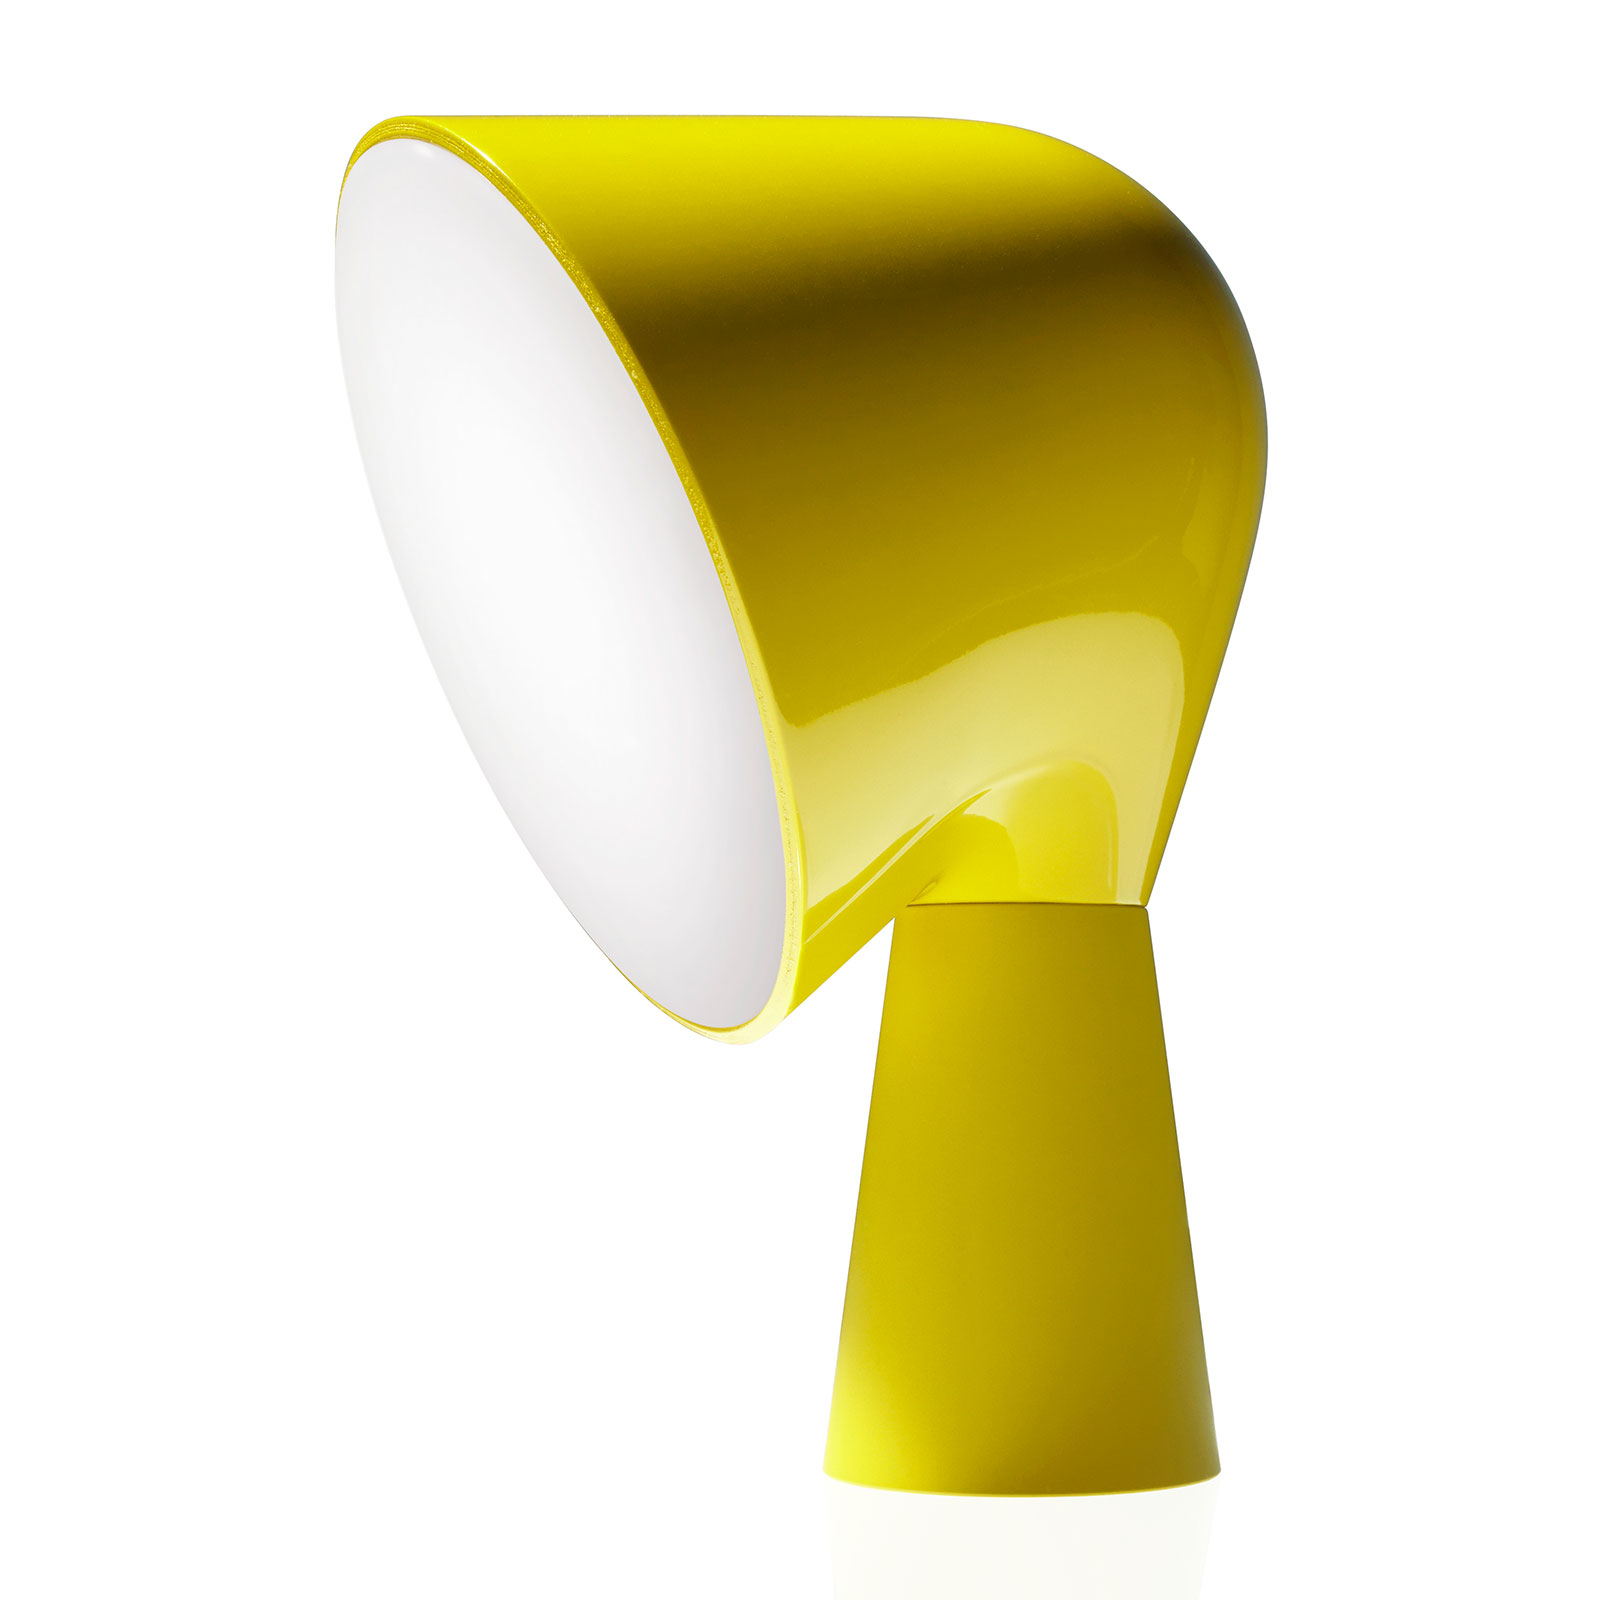 Foscarini Binic lampe à poser de designer, jaune